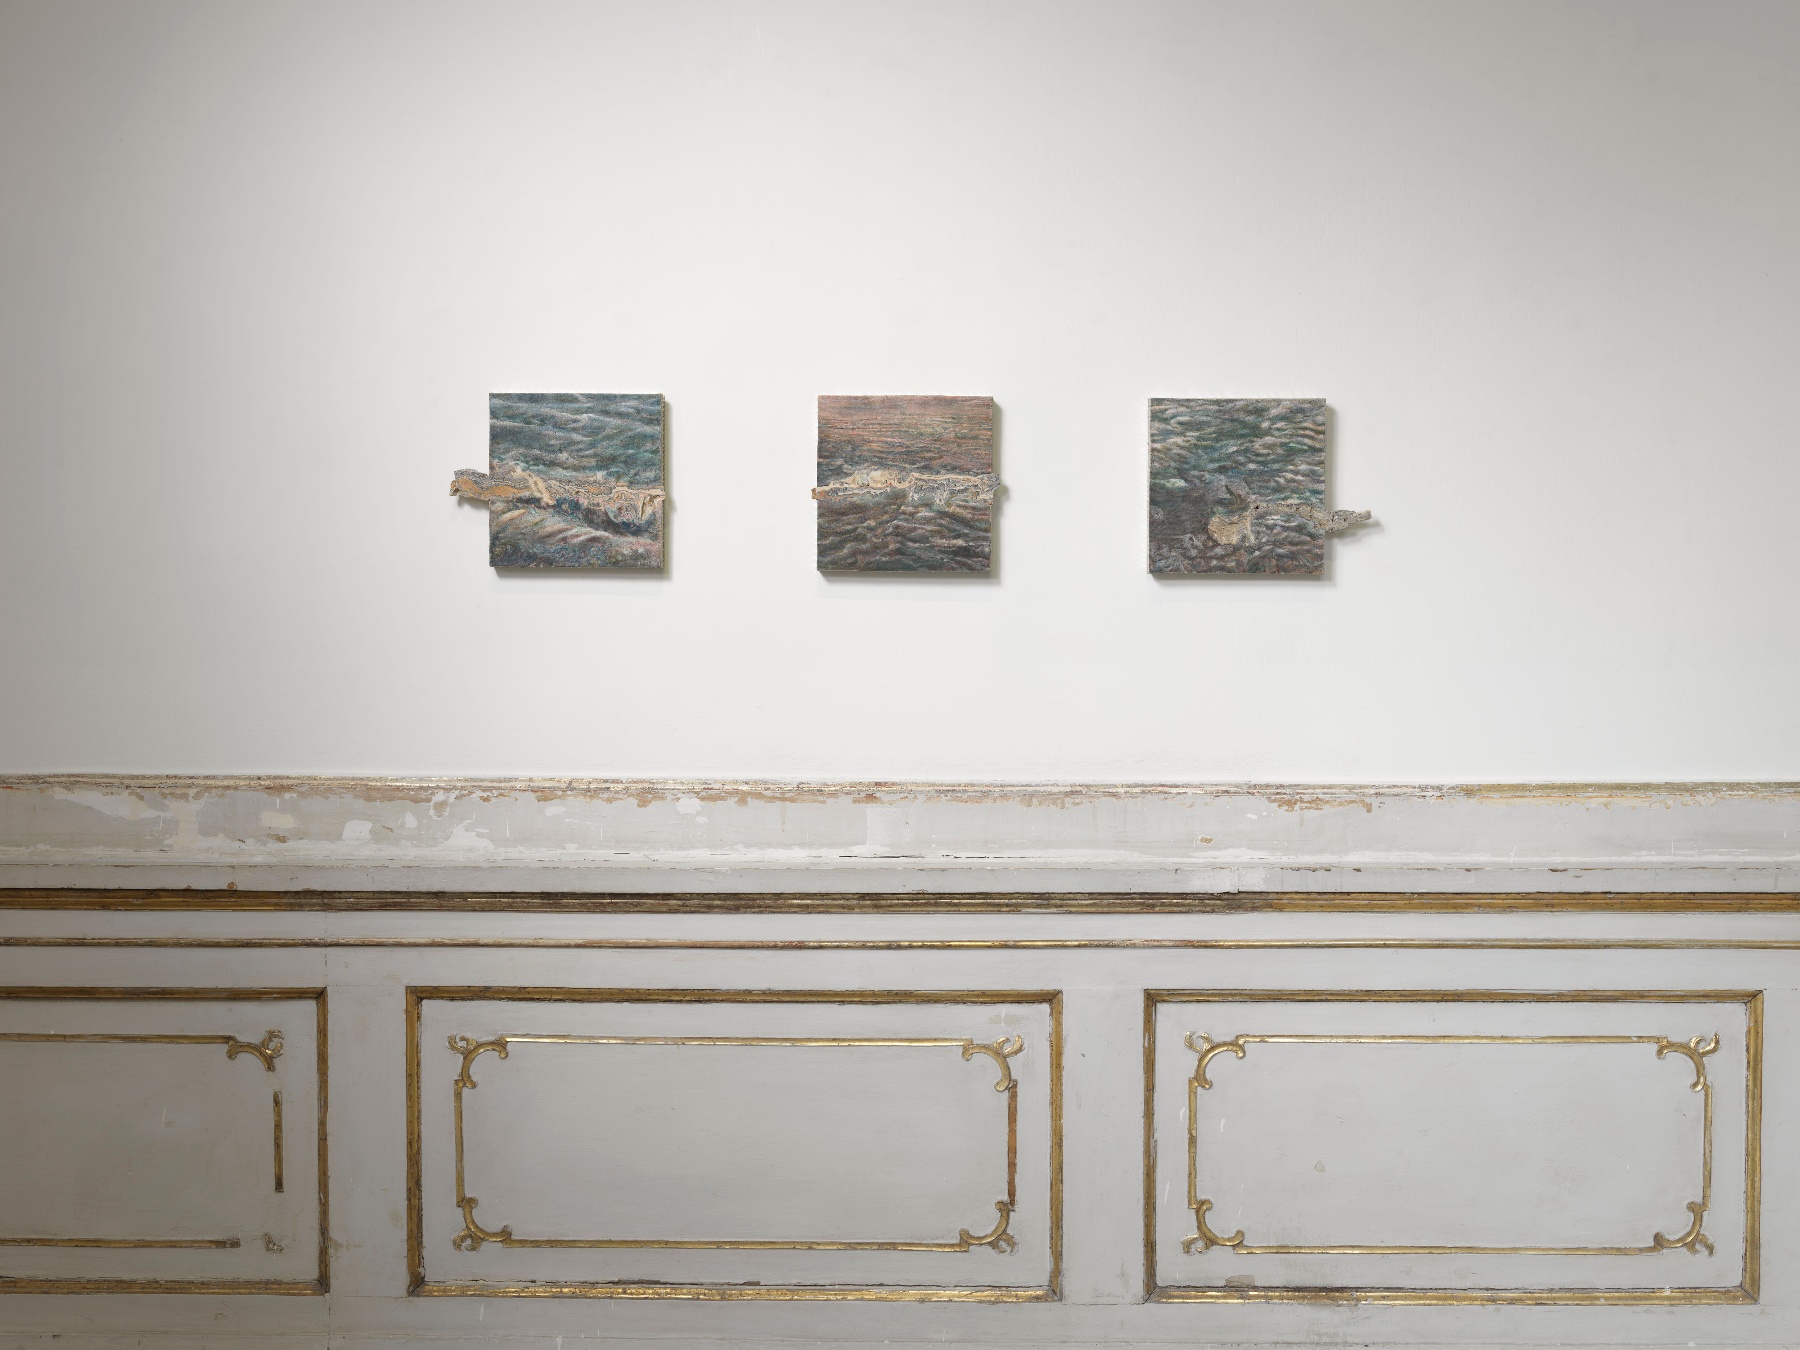 Anri Sala, veduta parziale della mostra, Galleria Alfonso Artiaco, Napoli, 2023